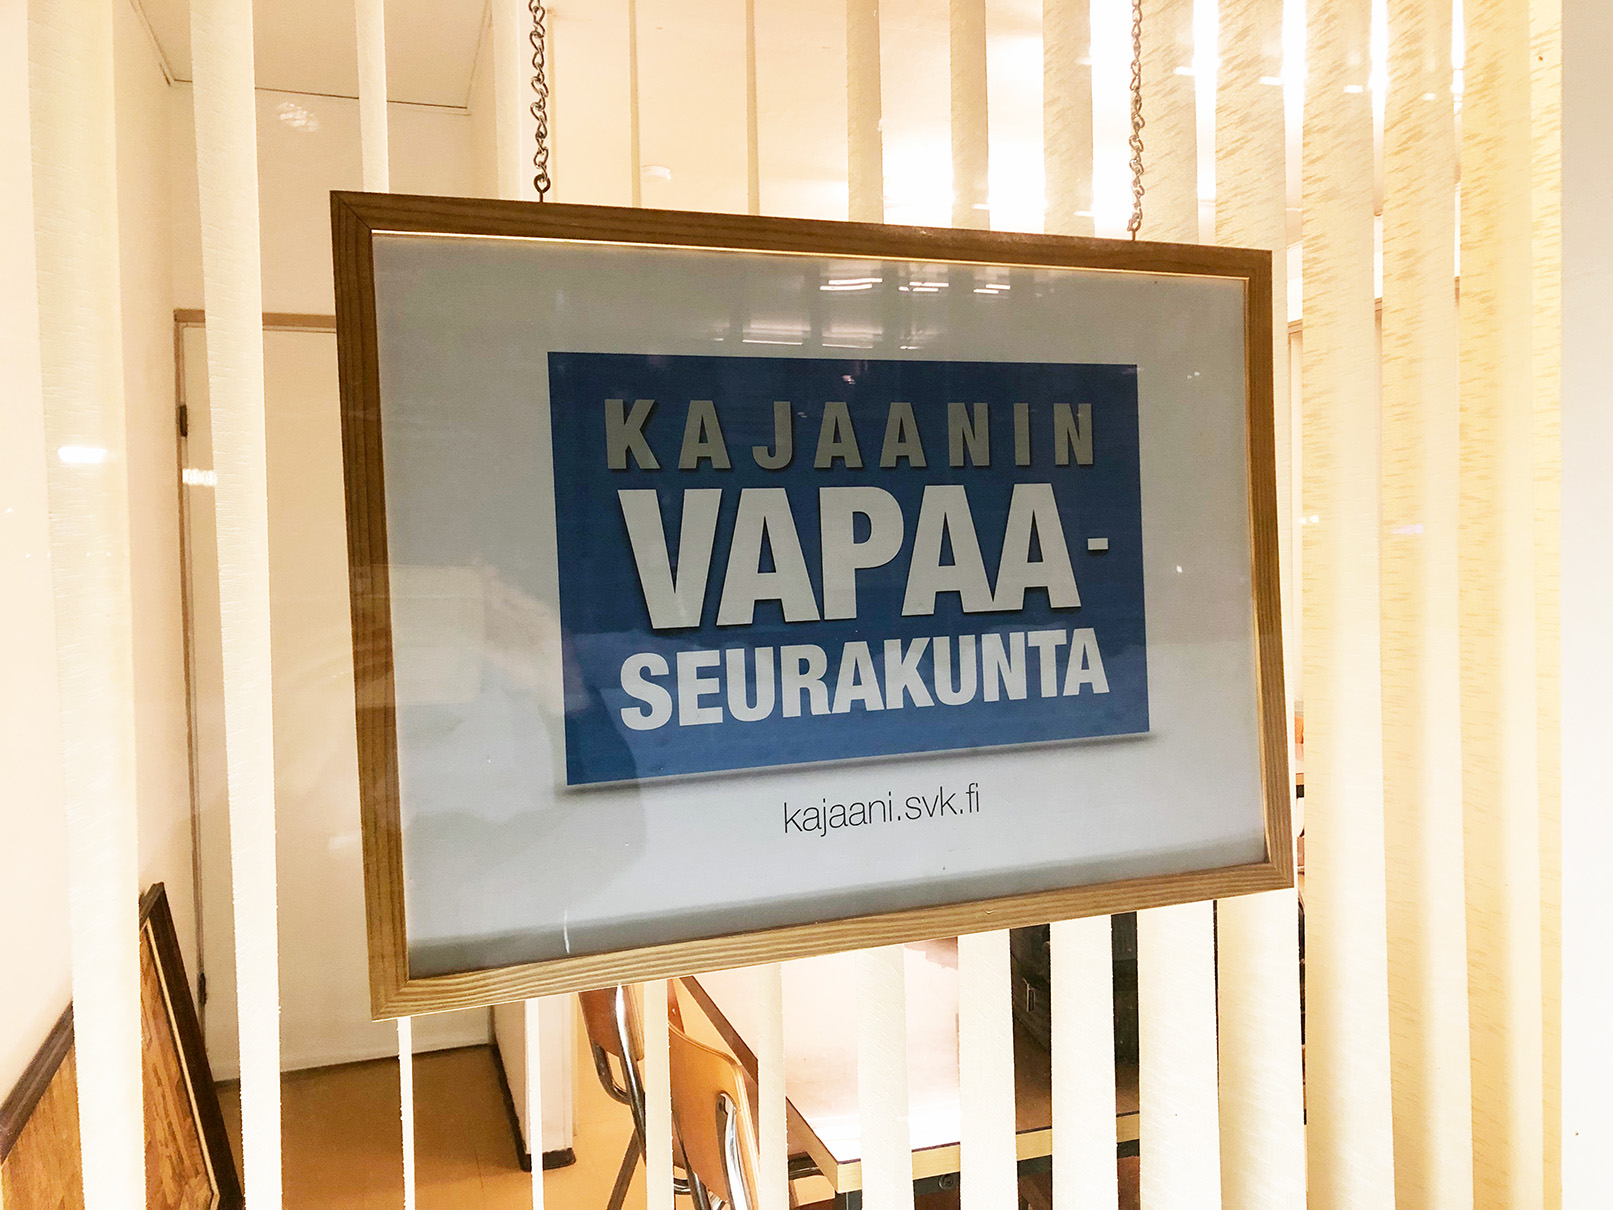 Kuvassa näkyy ikkuna ulkoapäin kuvattuna. Ikkunassa on säleverho ja lisäksi kyltti, jossa on Kajaanin vapaaseurakunnan uusi logo. Se koostuu tekstistä, joka on sinisellä pohjalla valkoisessa kehyksessä.